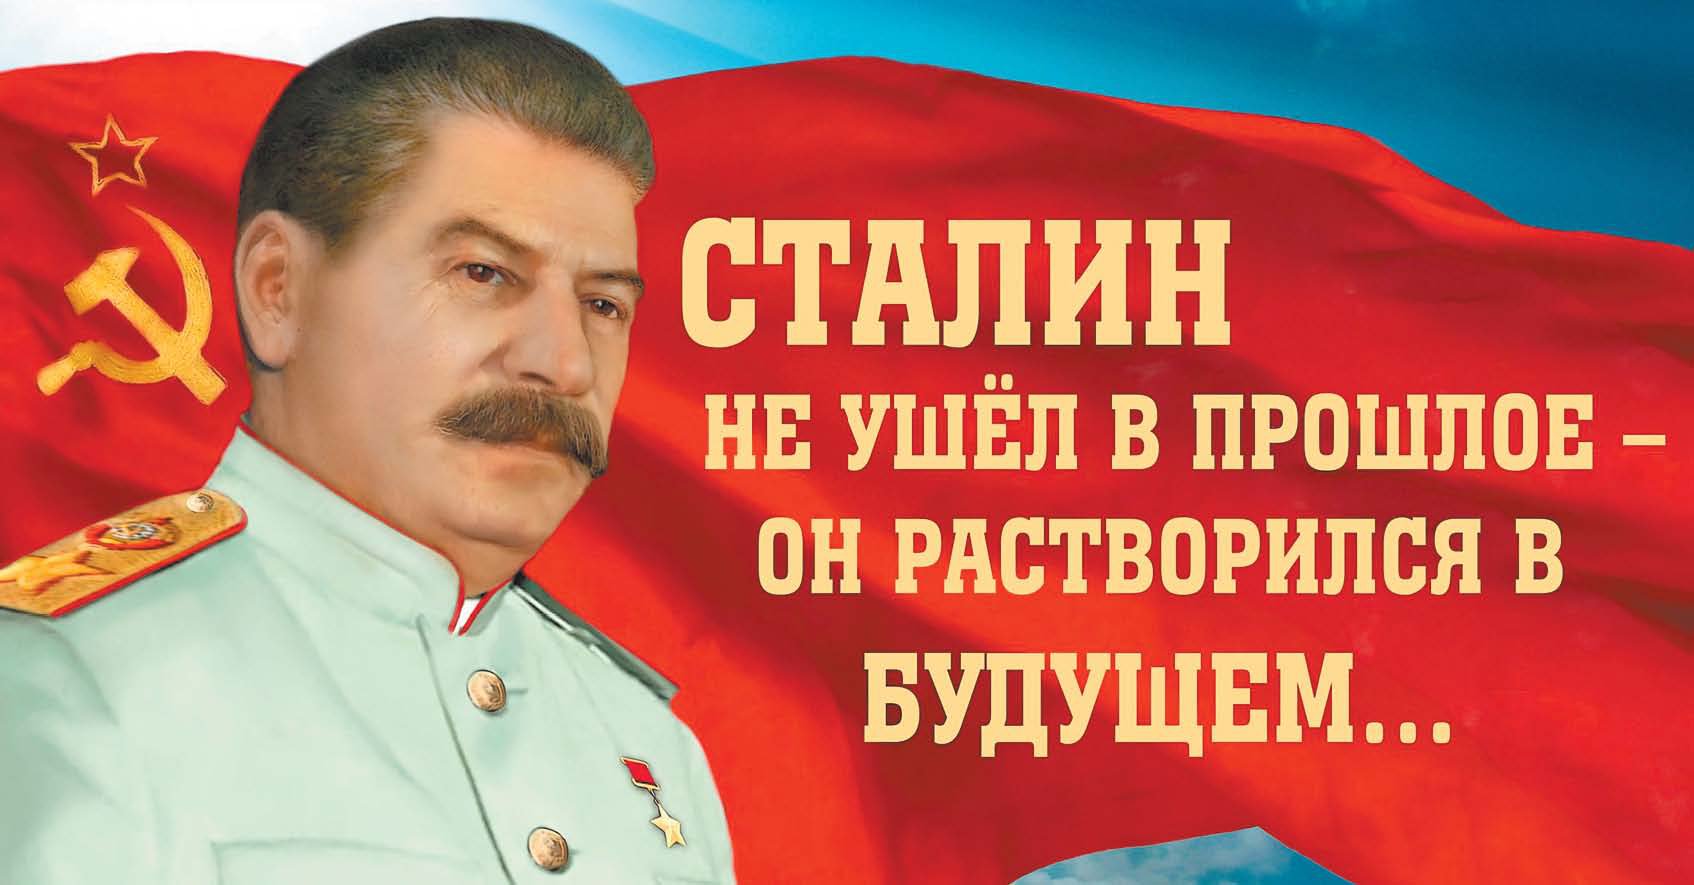 Народ голосует за Сталина, Пушкина и Путина